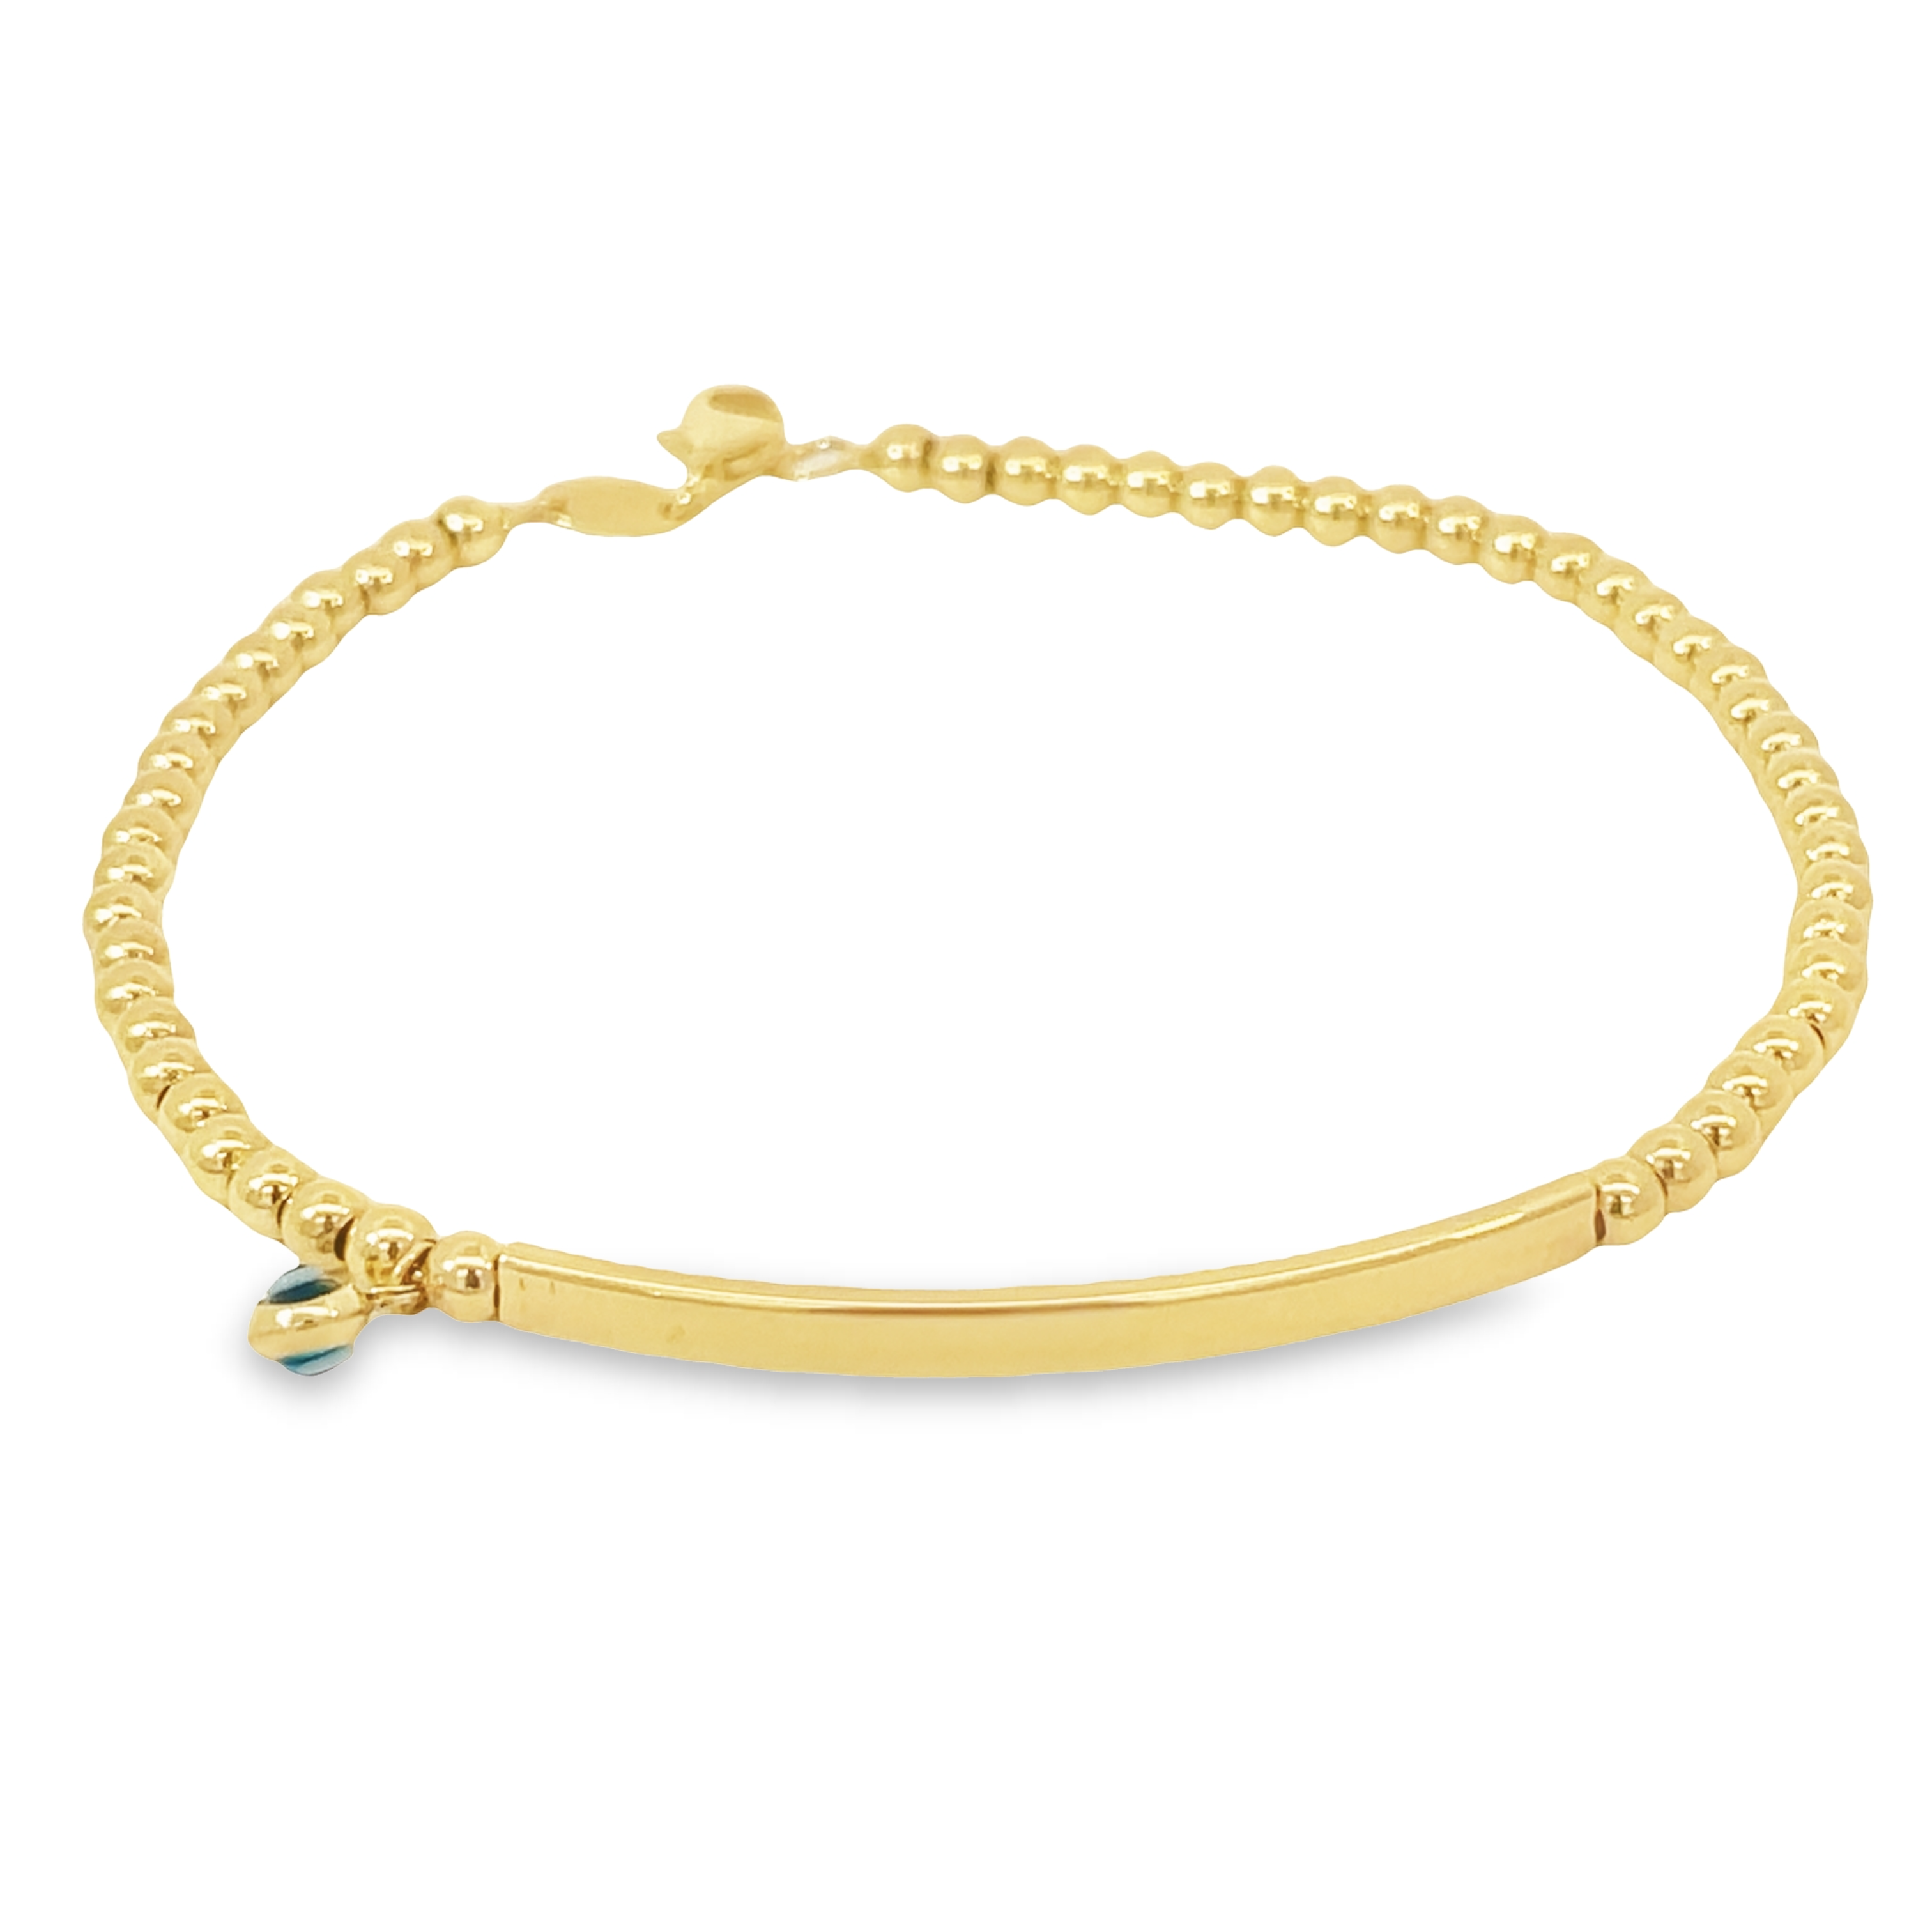 Stunning 14k Italian Gold Bracelet for Timeless Elegance